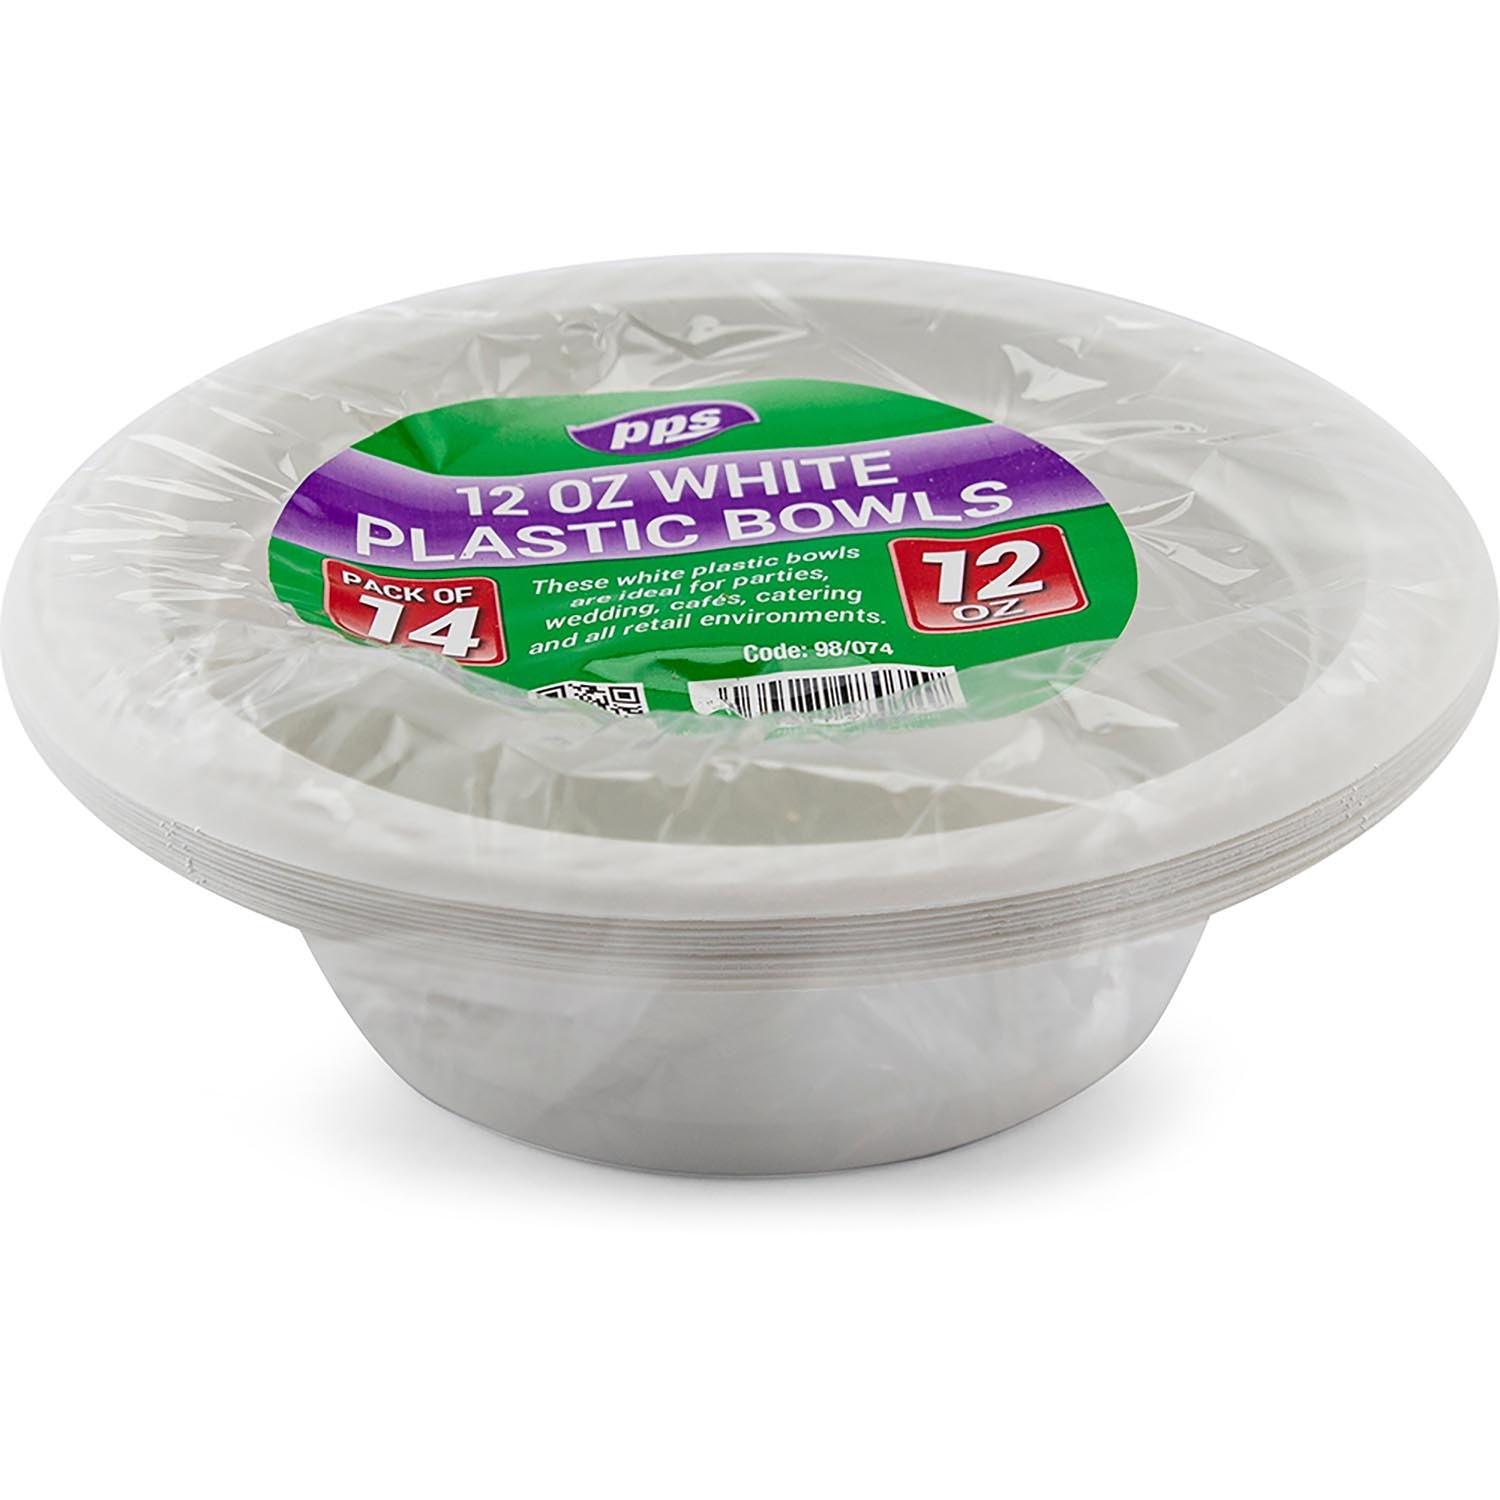 White Plastic Bowl 14 Pack Image